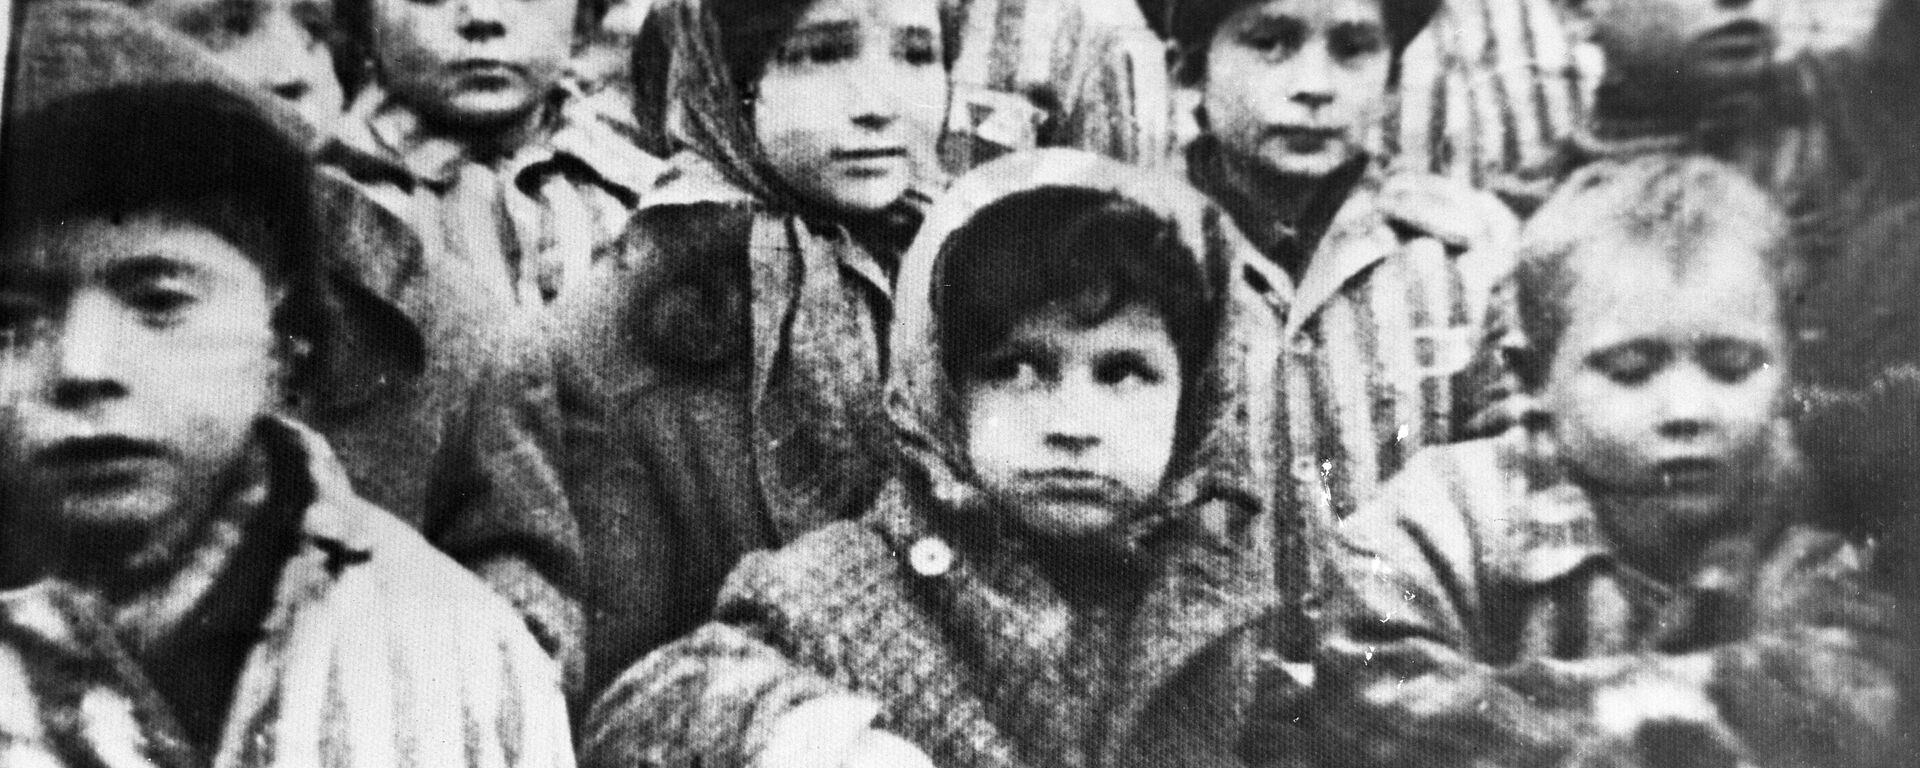 Дети освобожденные из лагеря Освенцим - Sputnik Lietuva, 1920, 27.01.2020